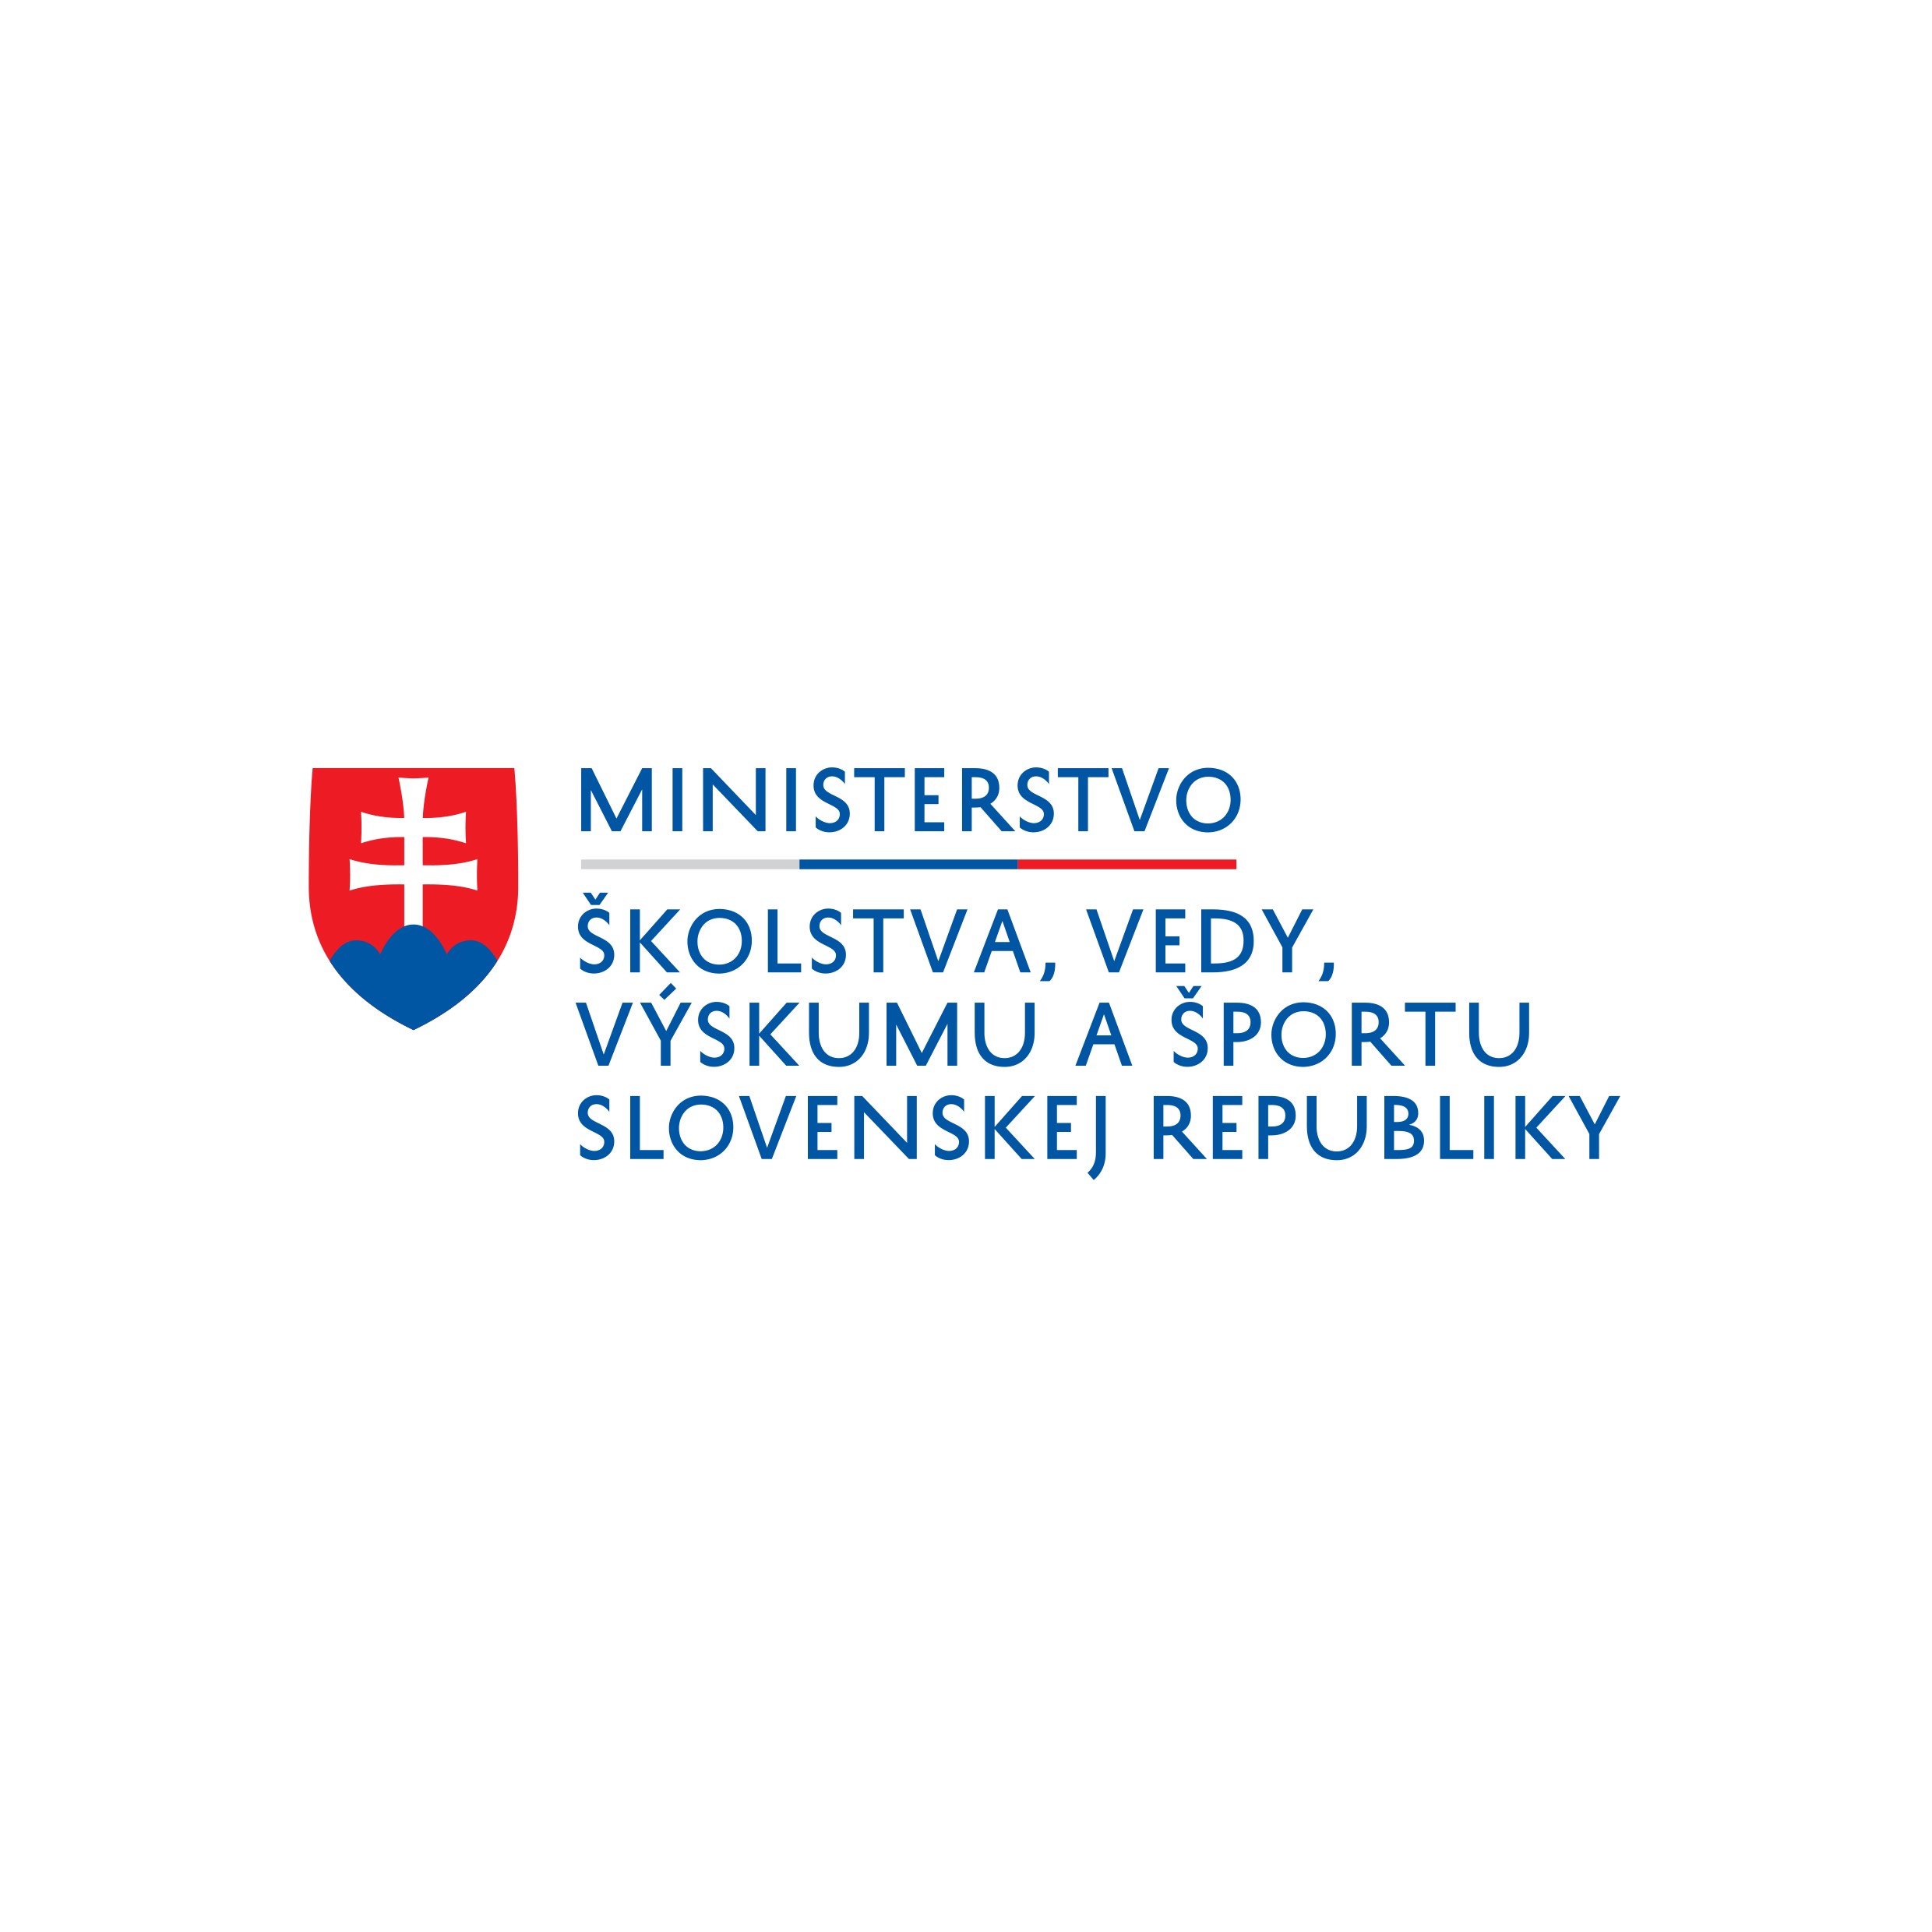 Ministerstvo školstva, vedy, výskumu a športu Slovenskej republiky logo